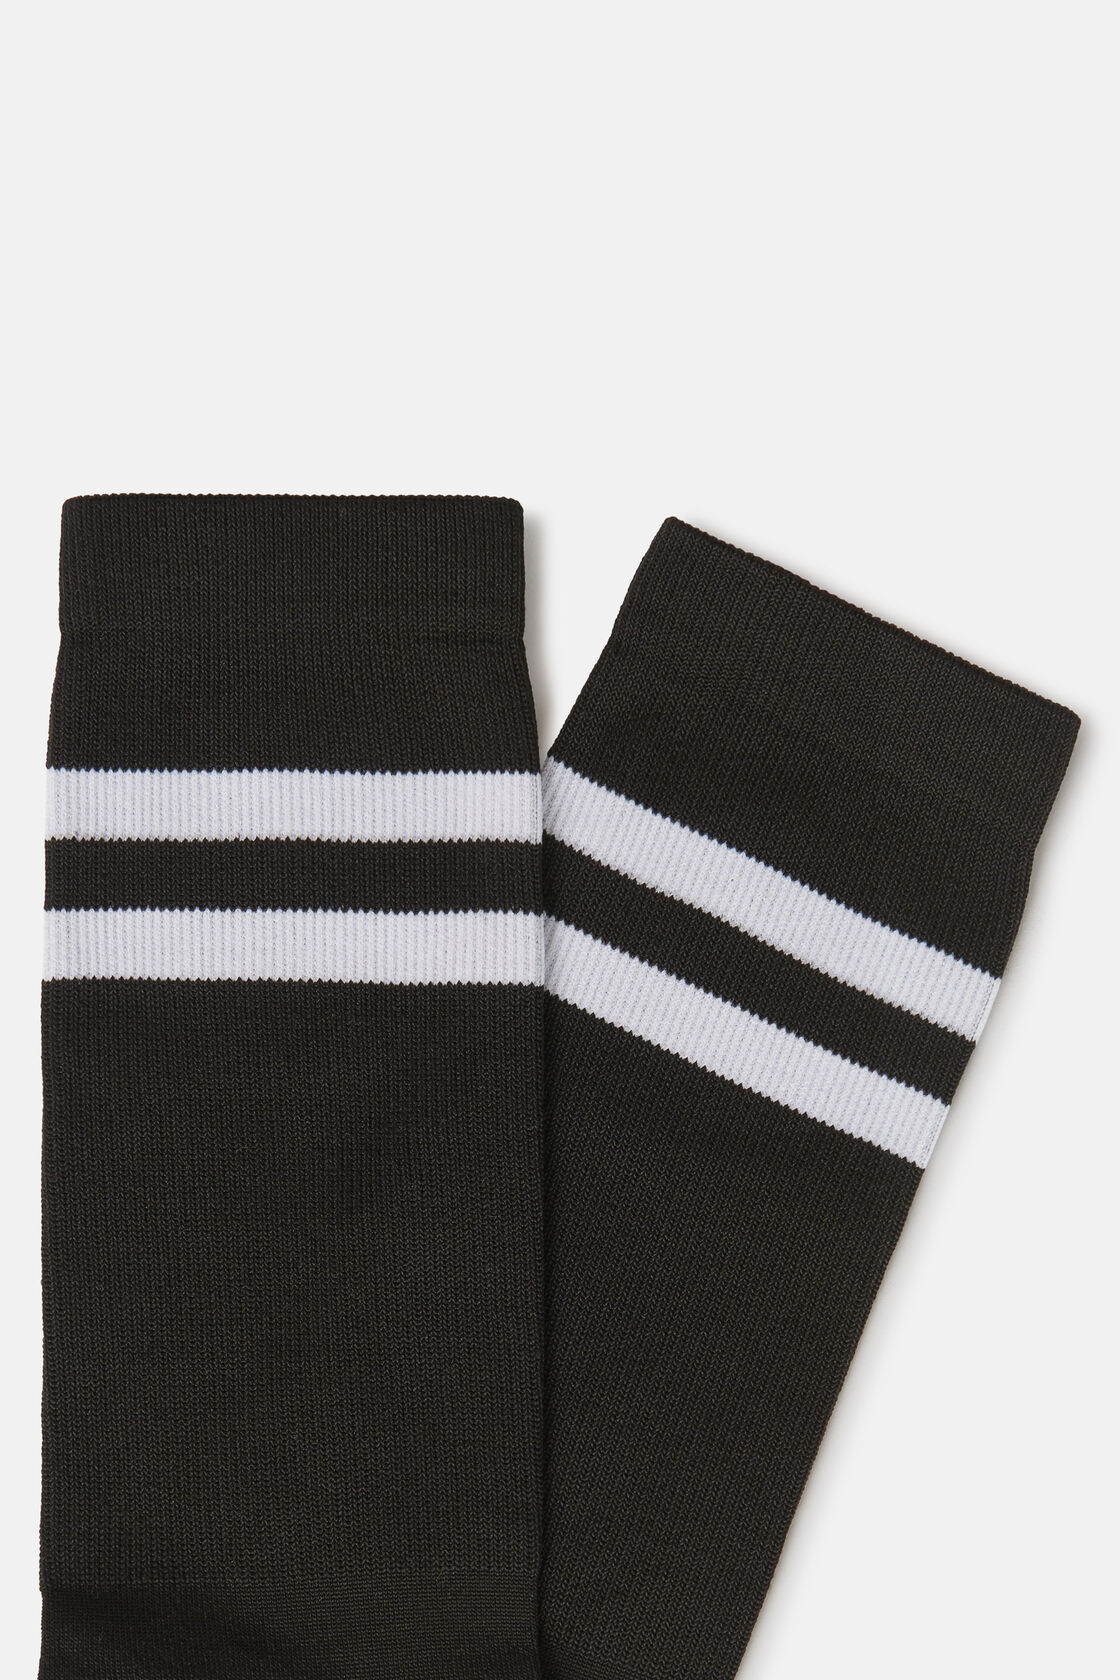 Sportos zokni technikai anyagból, Black - White, hi-res